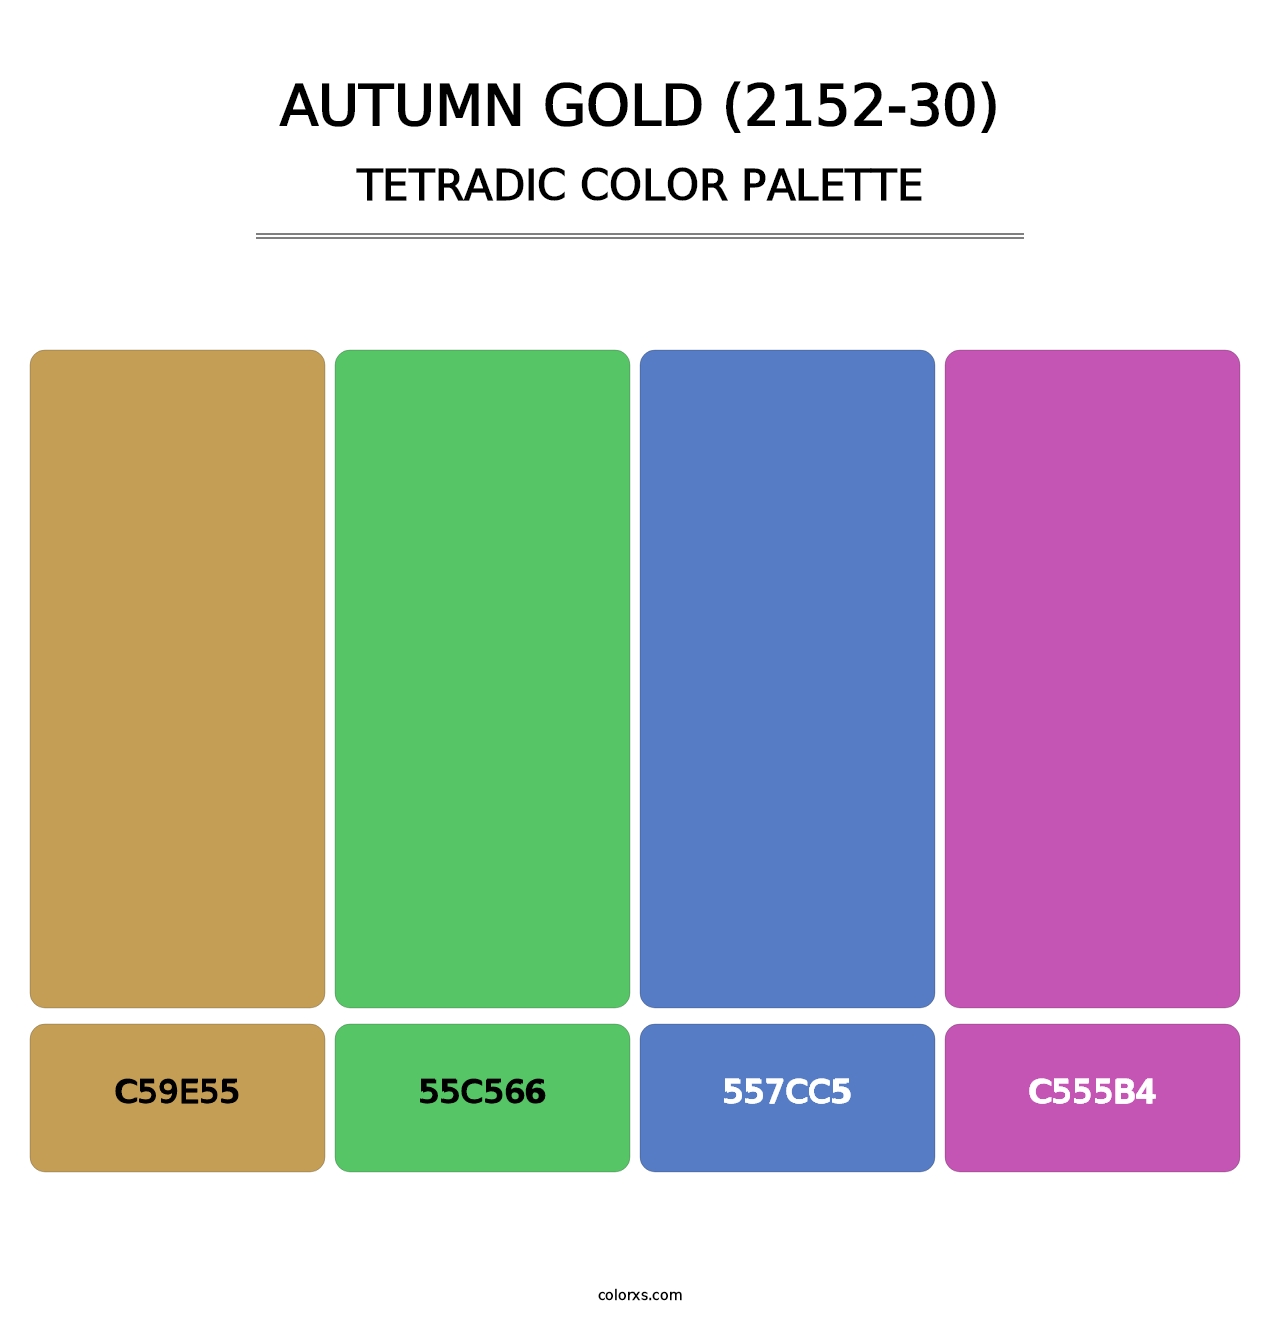 Autumn Gold (2152-30) - Tetradic Color Palette